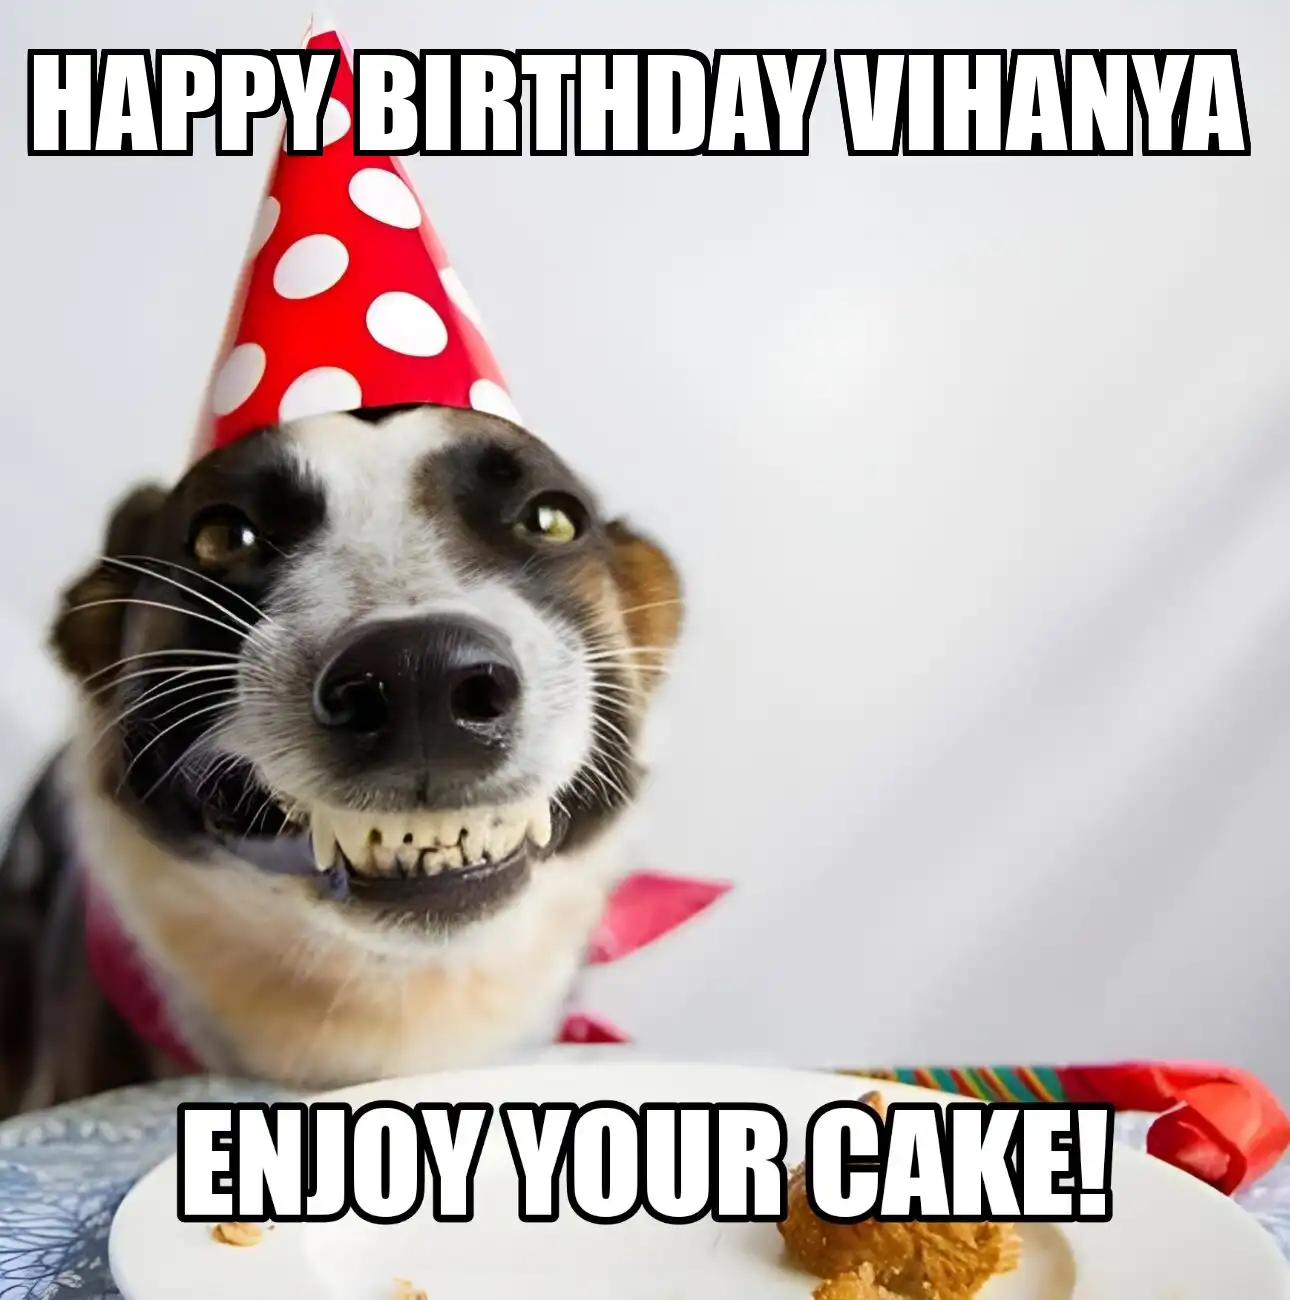 Happy Birthday Vihanya Enjoy Your Cake Dog Meme